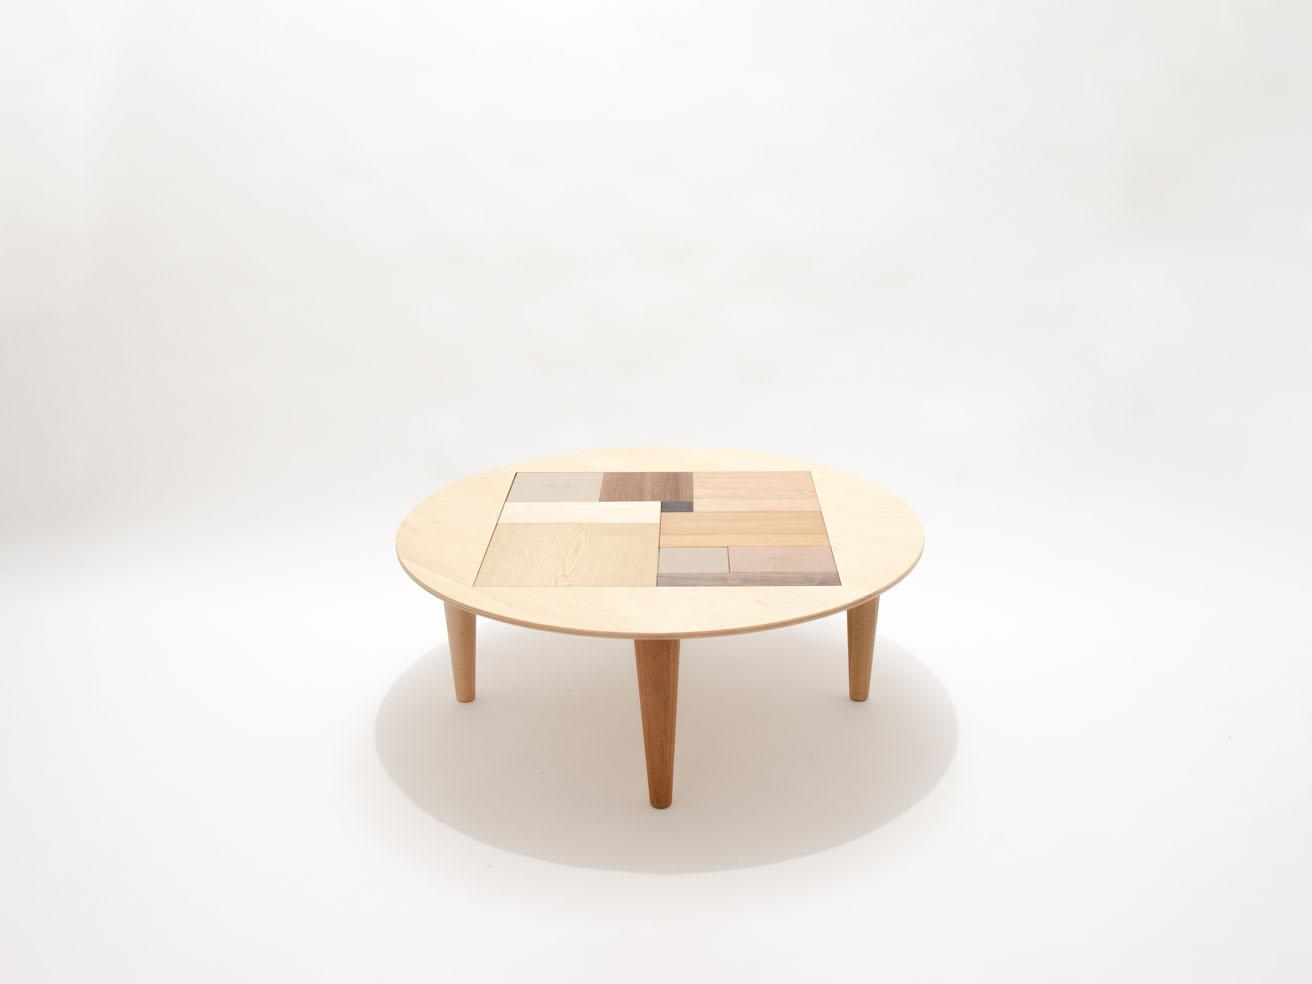 ローテーブル《PUZZLE TABLE》（φ800 × H300）。シナ合板の天板にある正方形部分がパズルになっていて、動かして遊べる。三谷龍二による漆塗りのピースもある。264,000円。
